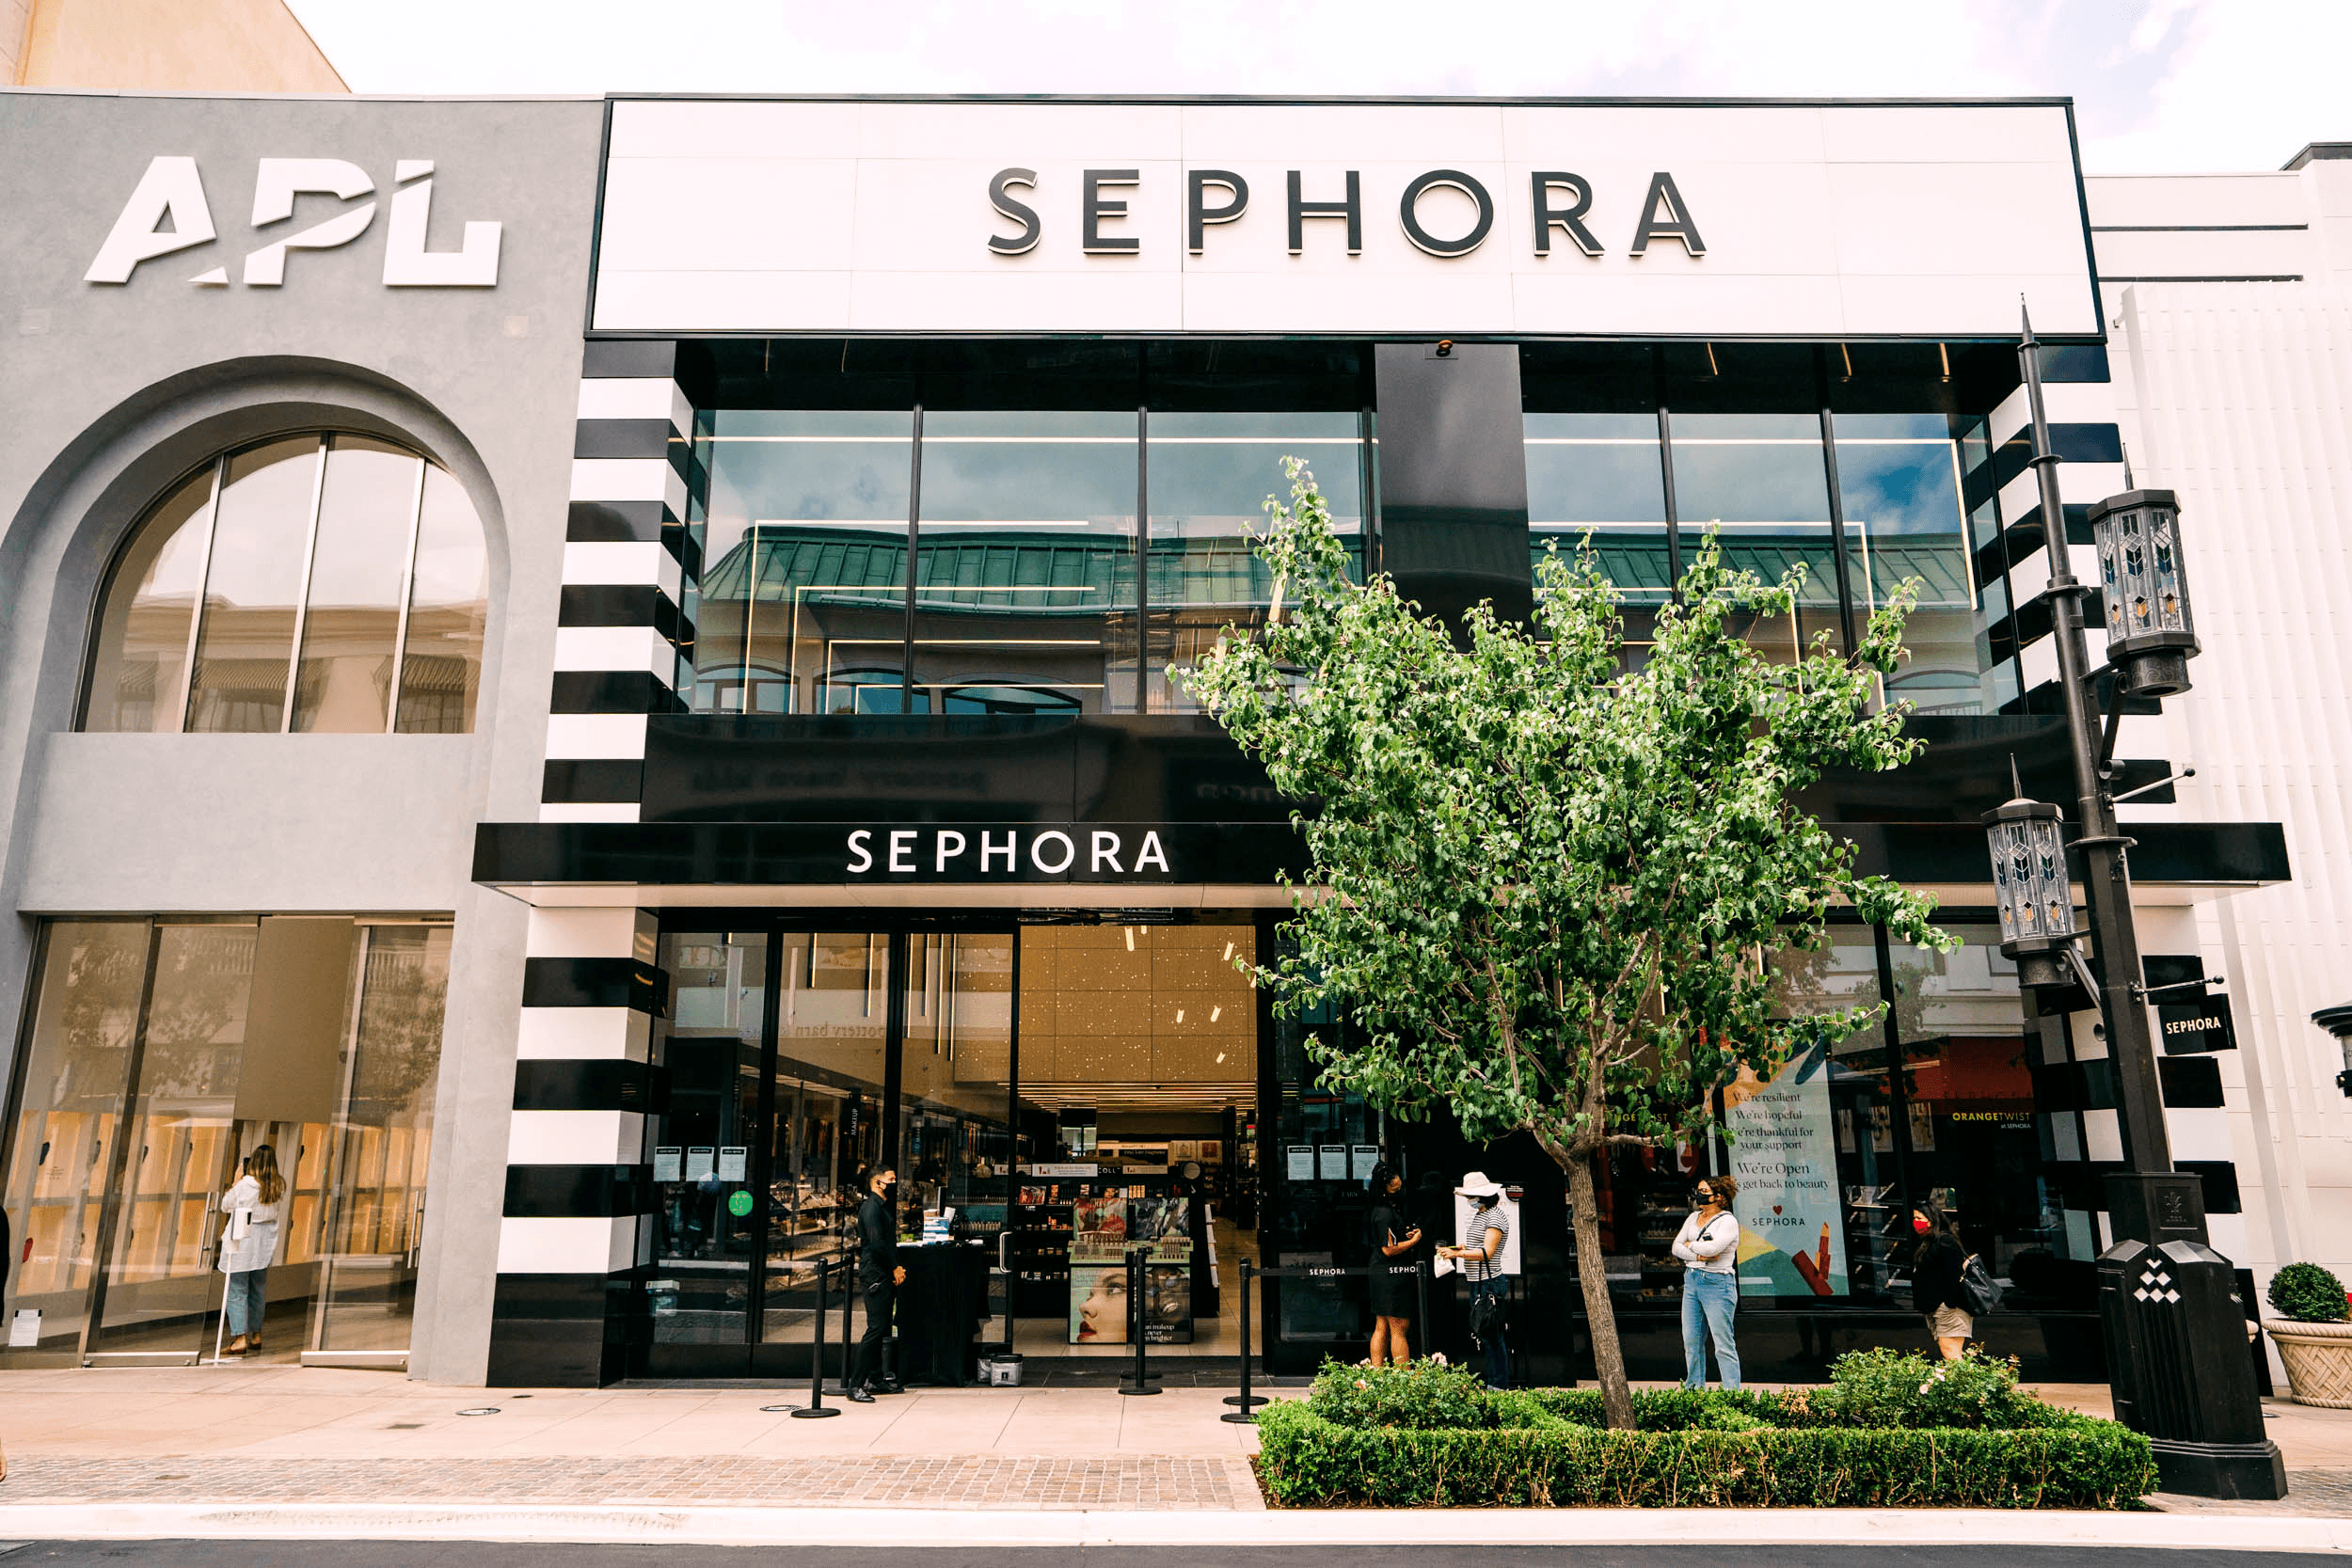 Sephora Store facada